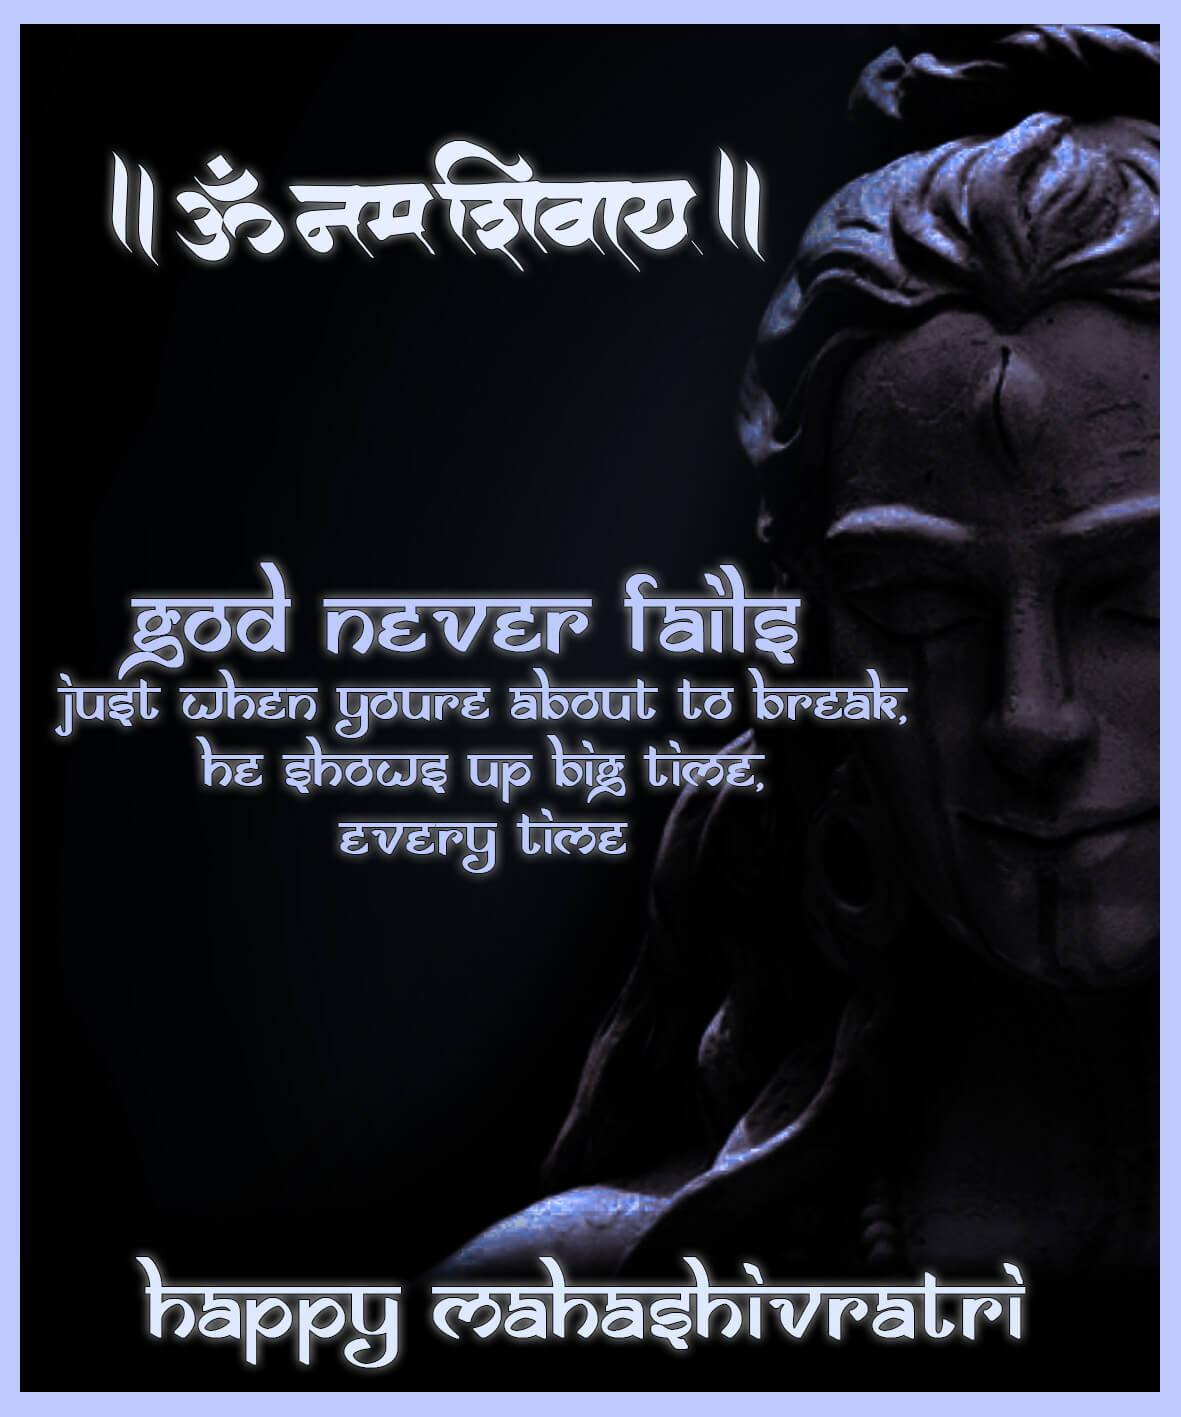 Mahashivratri_16 | eGreetings Portal